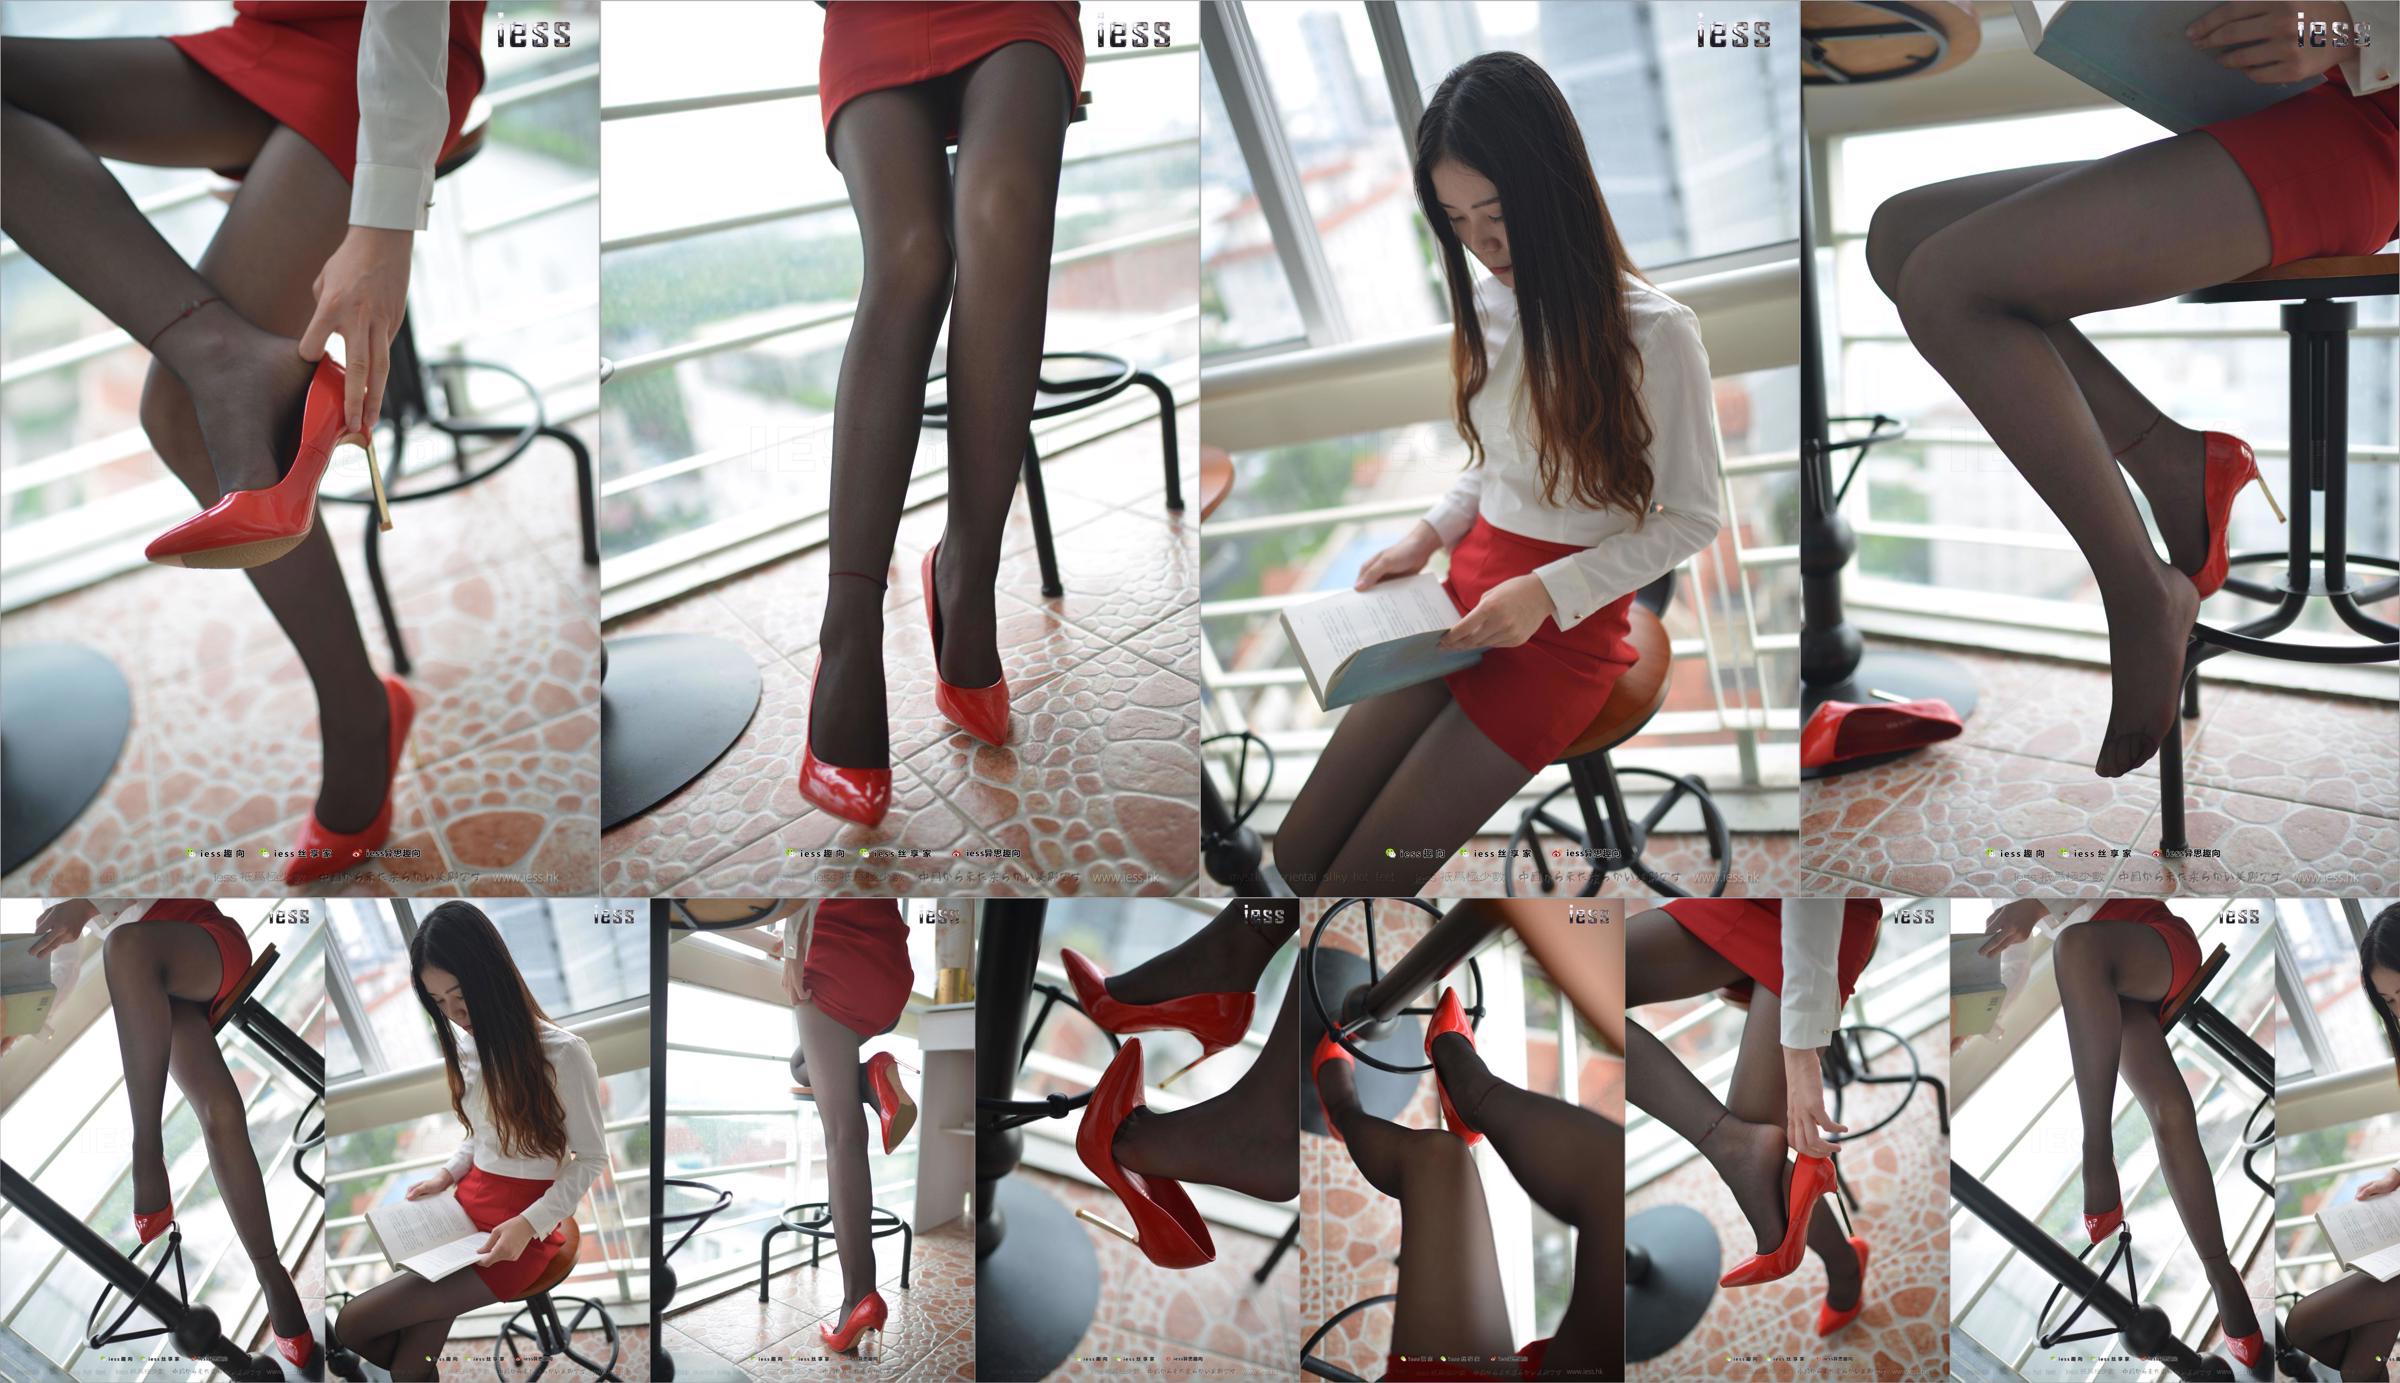 Silk Foot Bento 147 Concubine "Red High, Black Silk and Red Dress" [IESS Estranho Interessante] No.4d56f2 Página 2